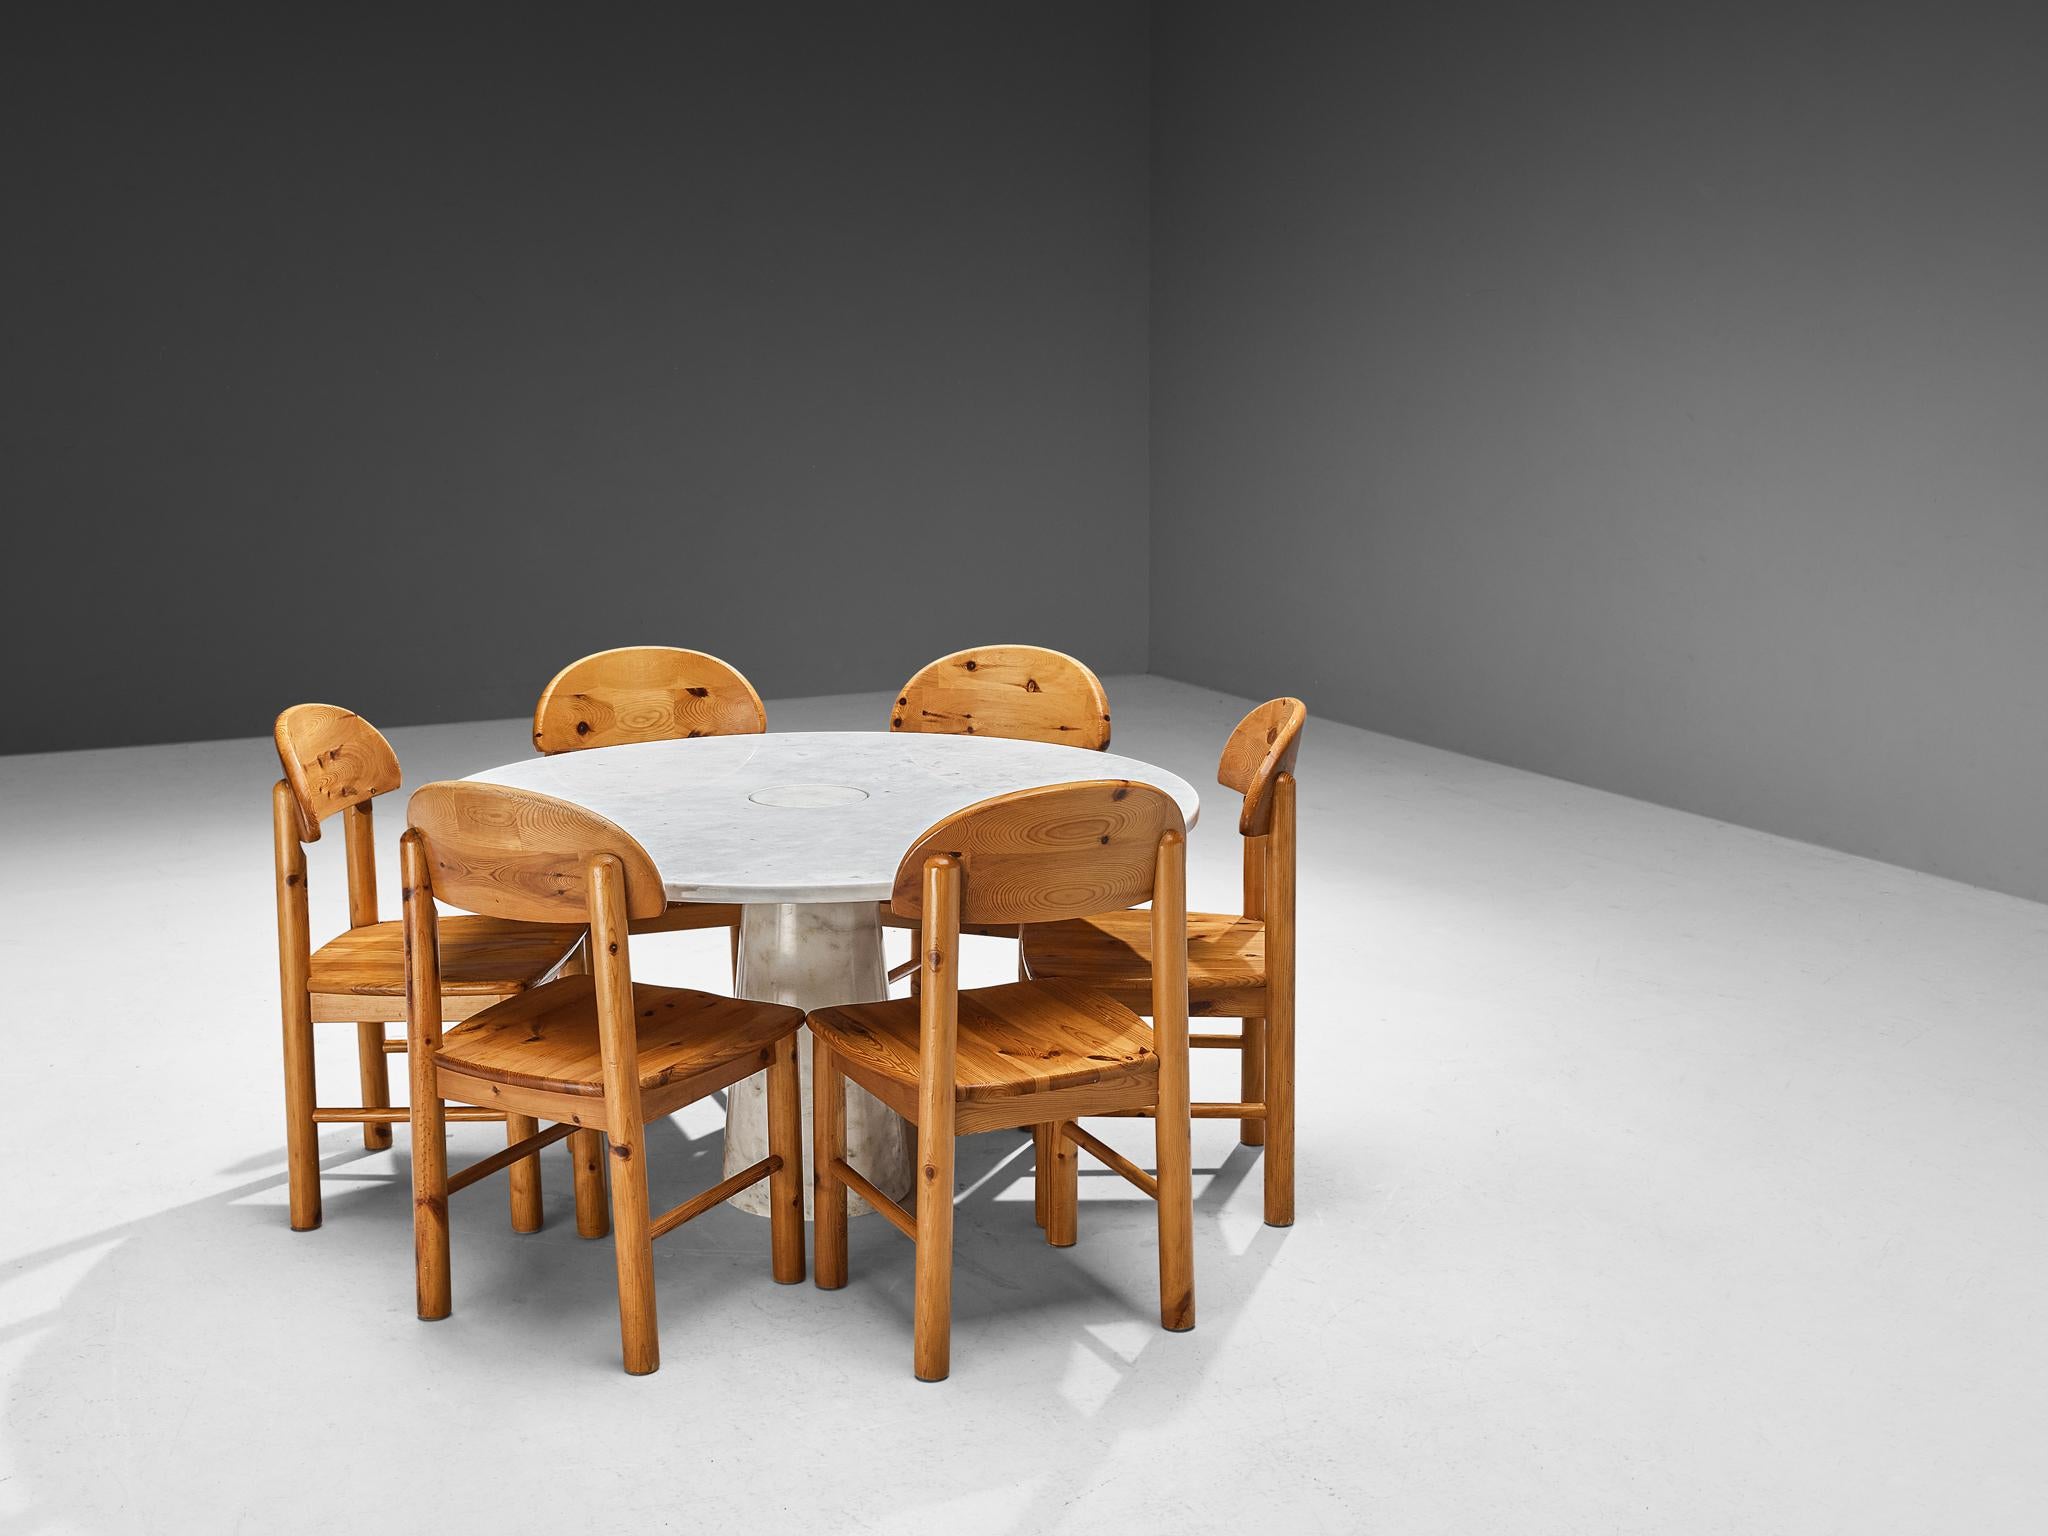 Angelo Mangiarotti pour Skipper, table de salle à manger 'Eros', marbre blanc, années 1970, avec ensemble de six chaises de salle à manger en pin de Rainer Daumiller

Cette table sculpturale d'Angelo Mangiarotti est un exemple habile de design